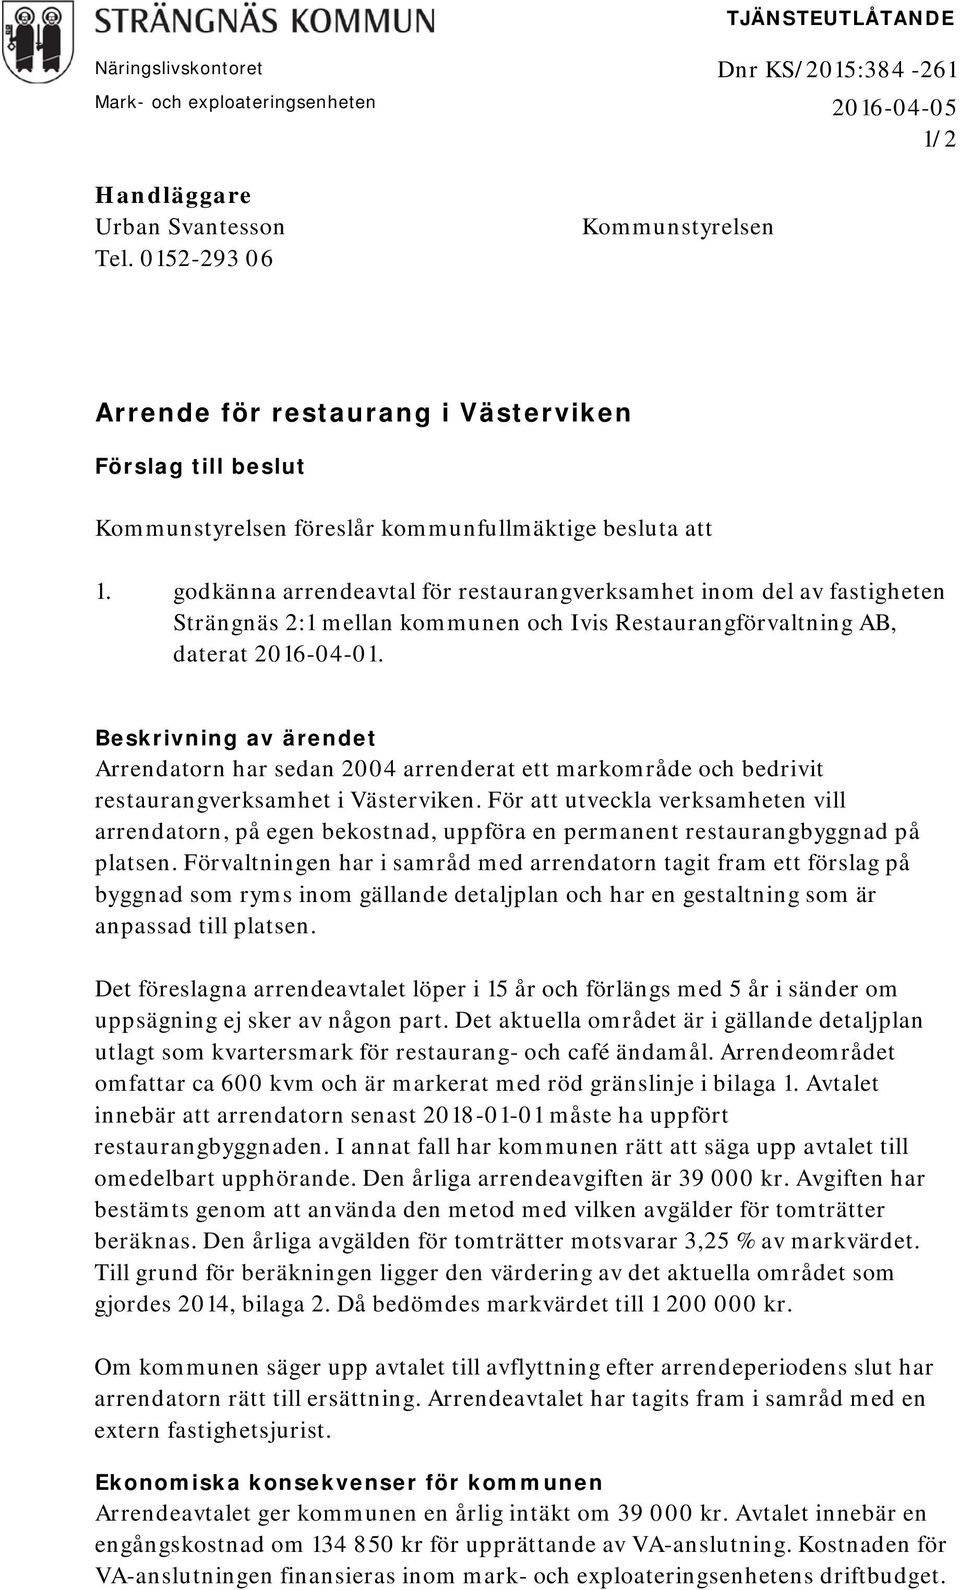 godkänna arrendeavtal för restaurangverksamhet inom del av fastigheten Strängnäs 2:1 mellan kommunen och Ivis Restaurangförvaltning AB, daterat 2016-04-01.